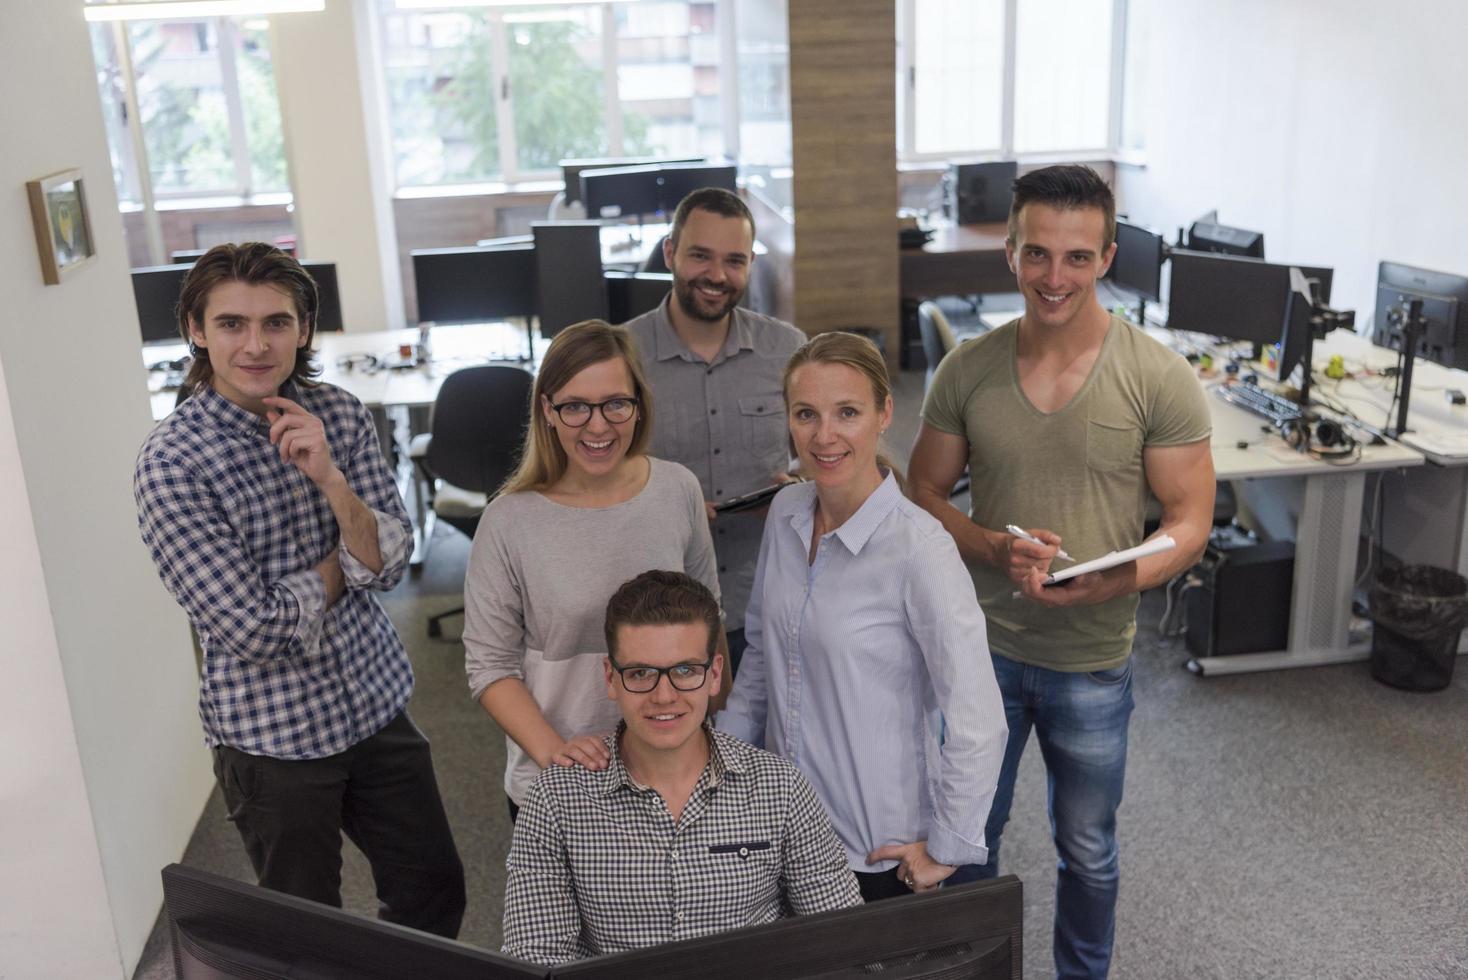 Gruppe junger Startup-Geschäftsleute, die als Team stehen foto